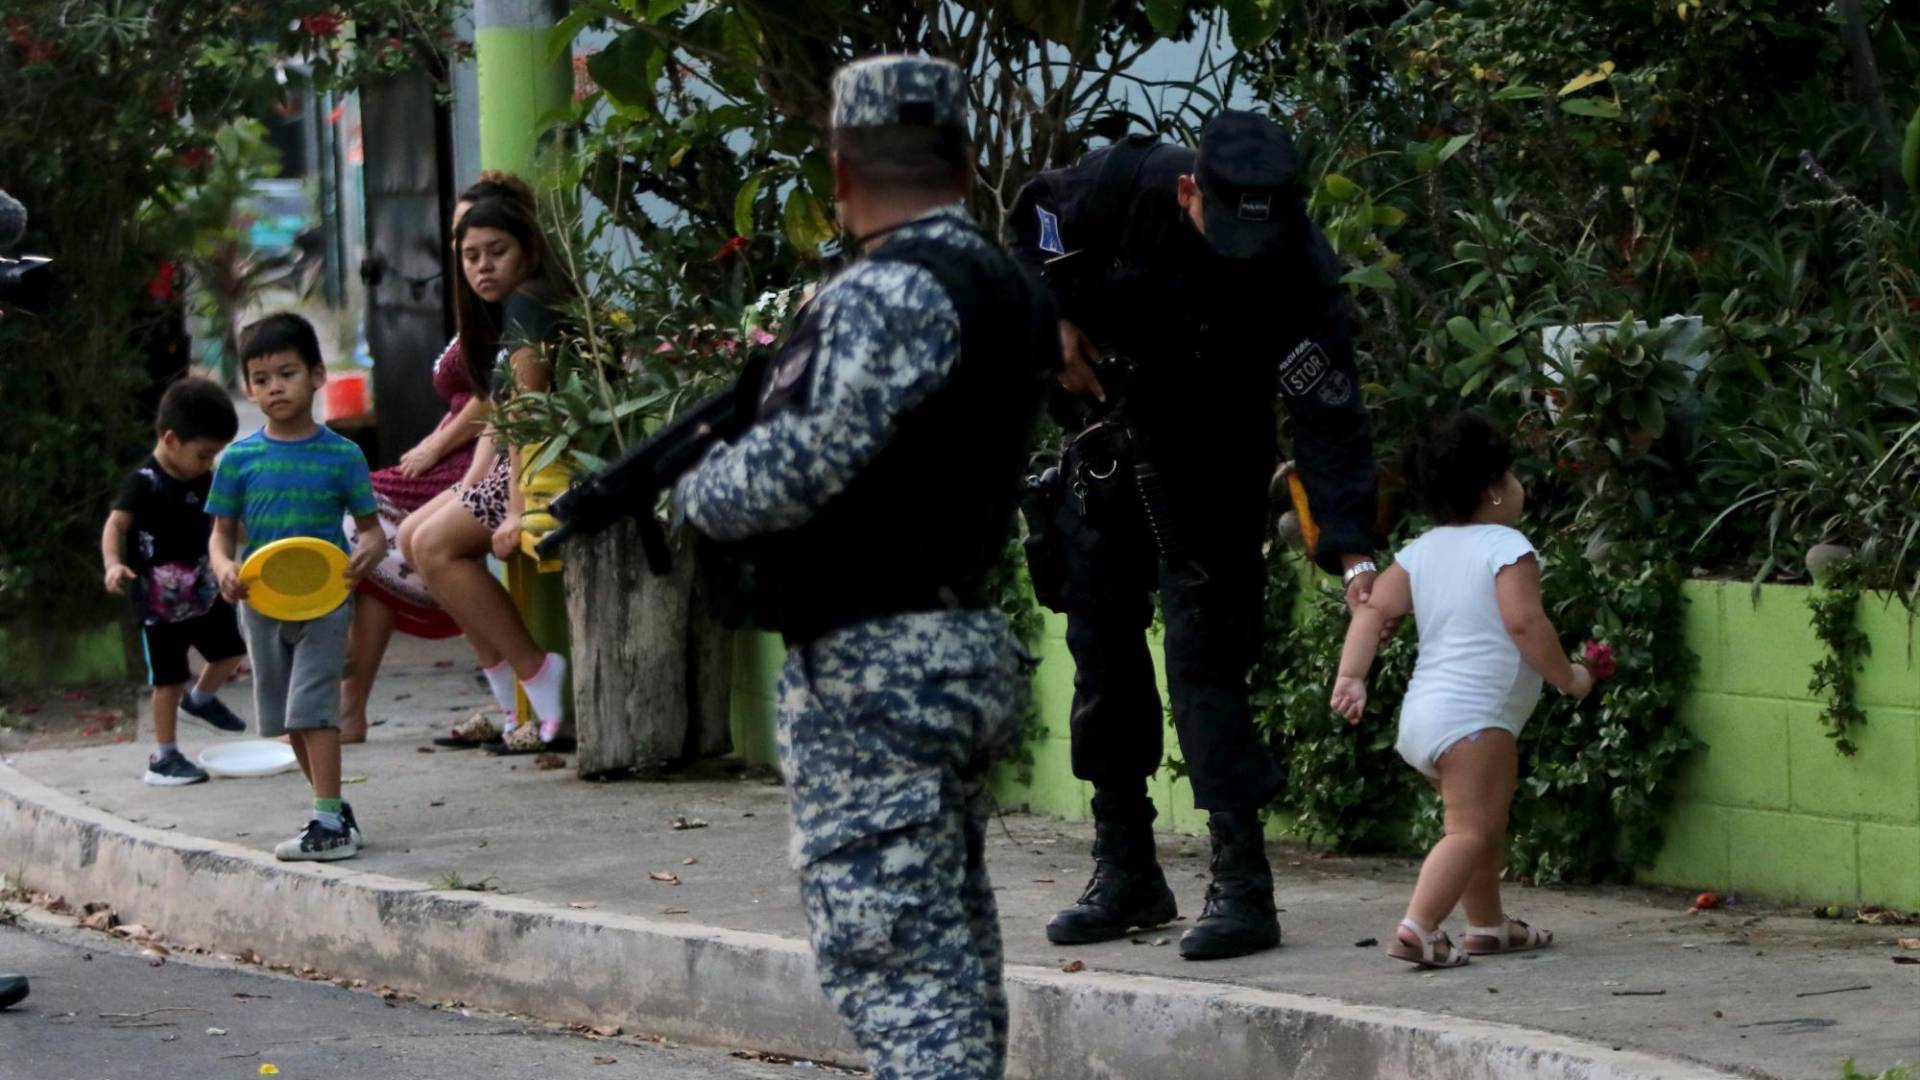 $!Una pequeña bebé juega en medio de los policías, mientras otro grupo de niños pasa la tarde en la calle sin temor a la delincuencia